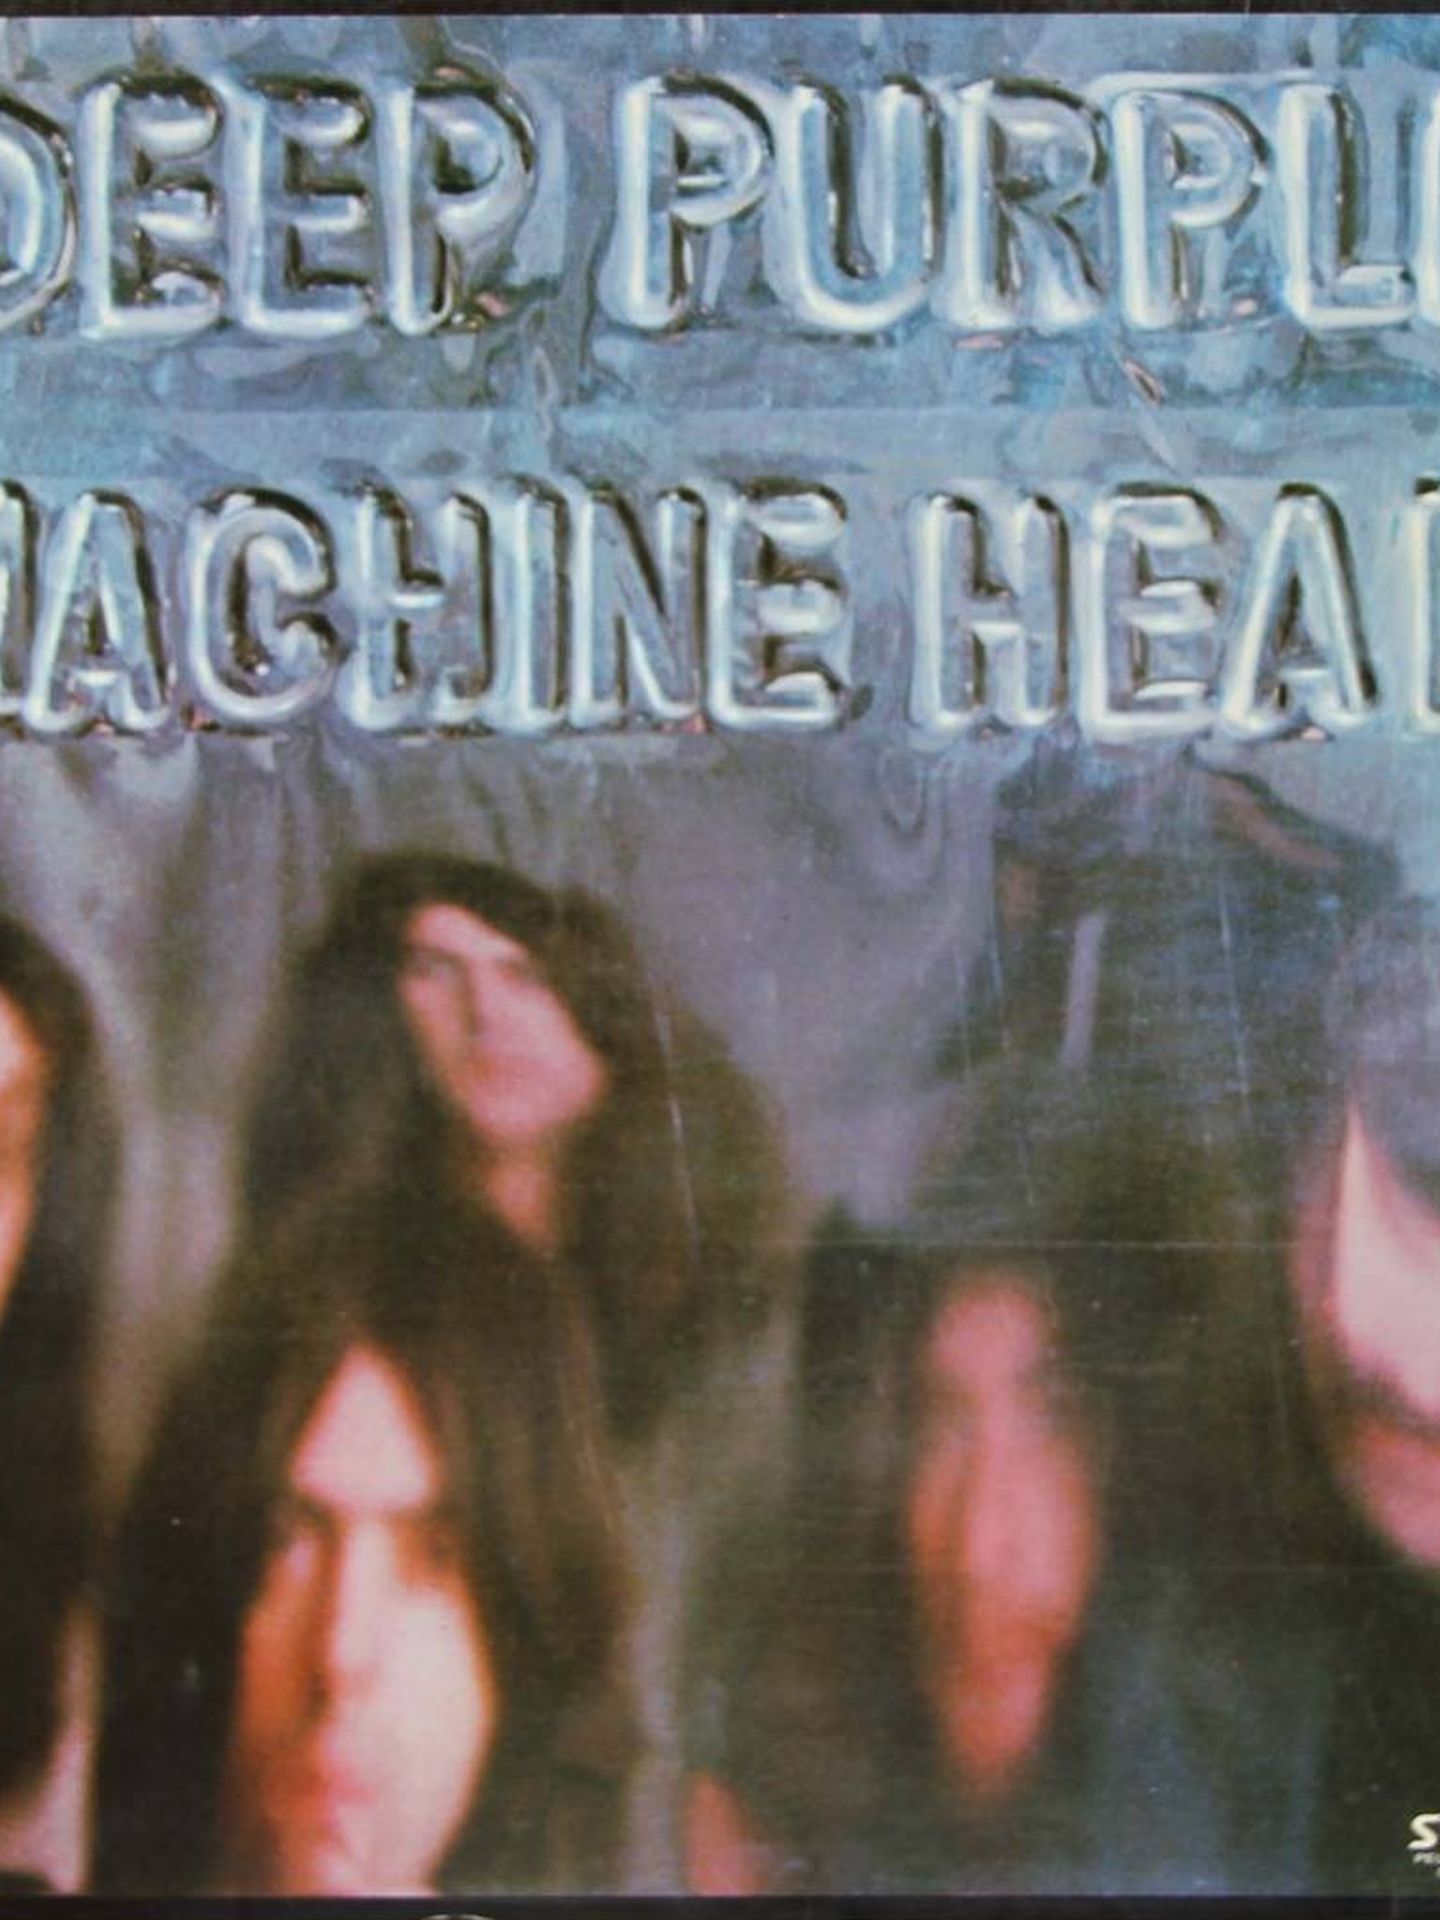 Portada del álbum 'Machine Head' de Deep Purple.